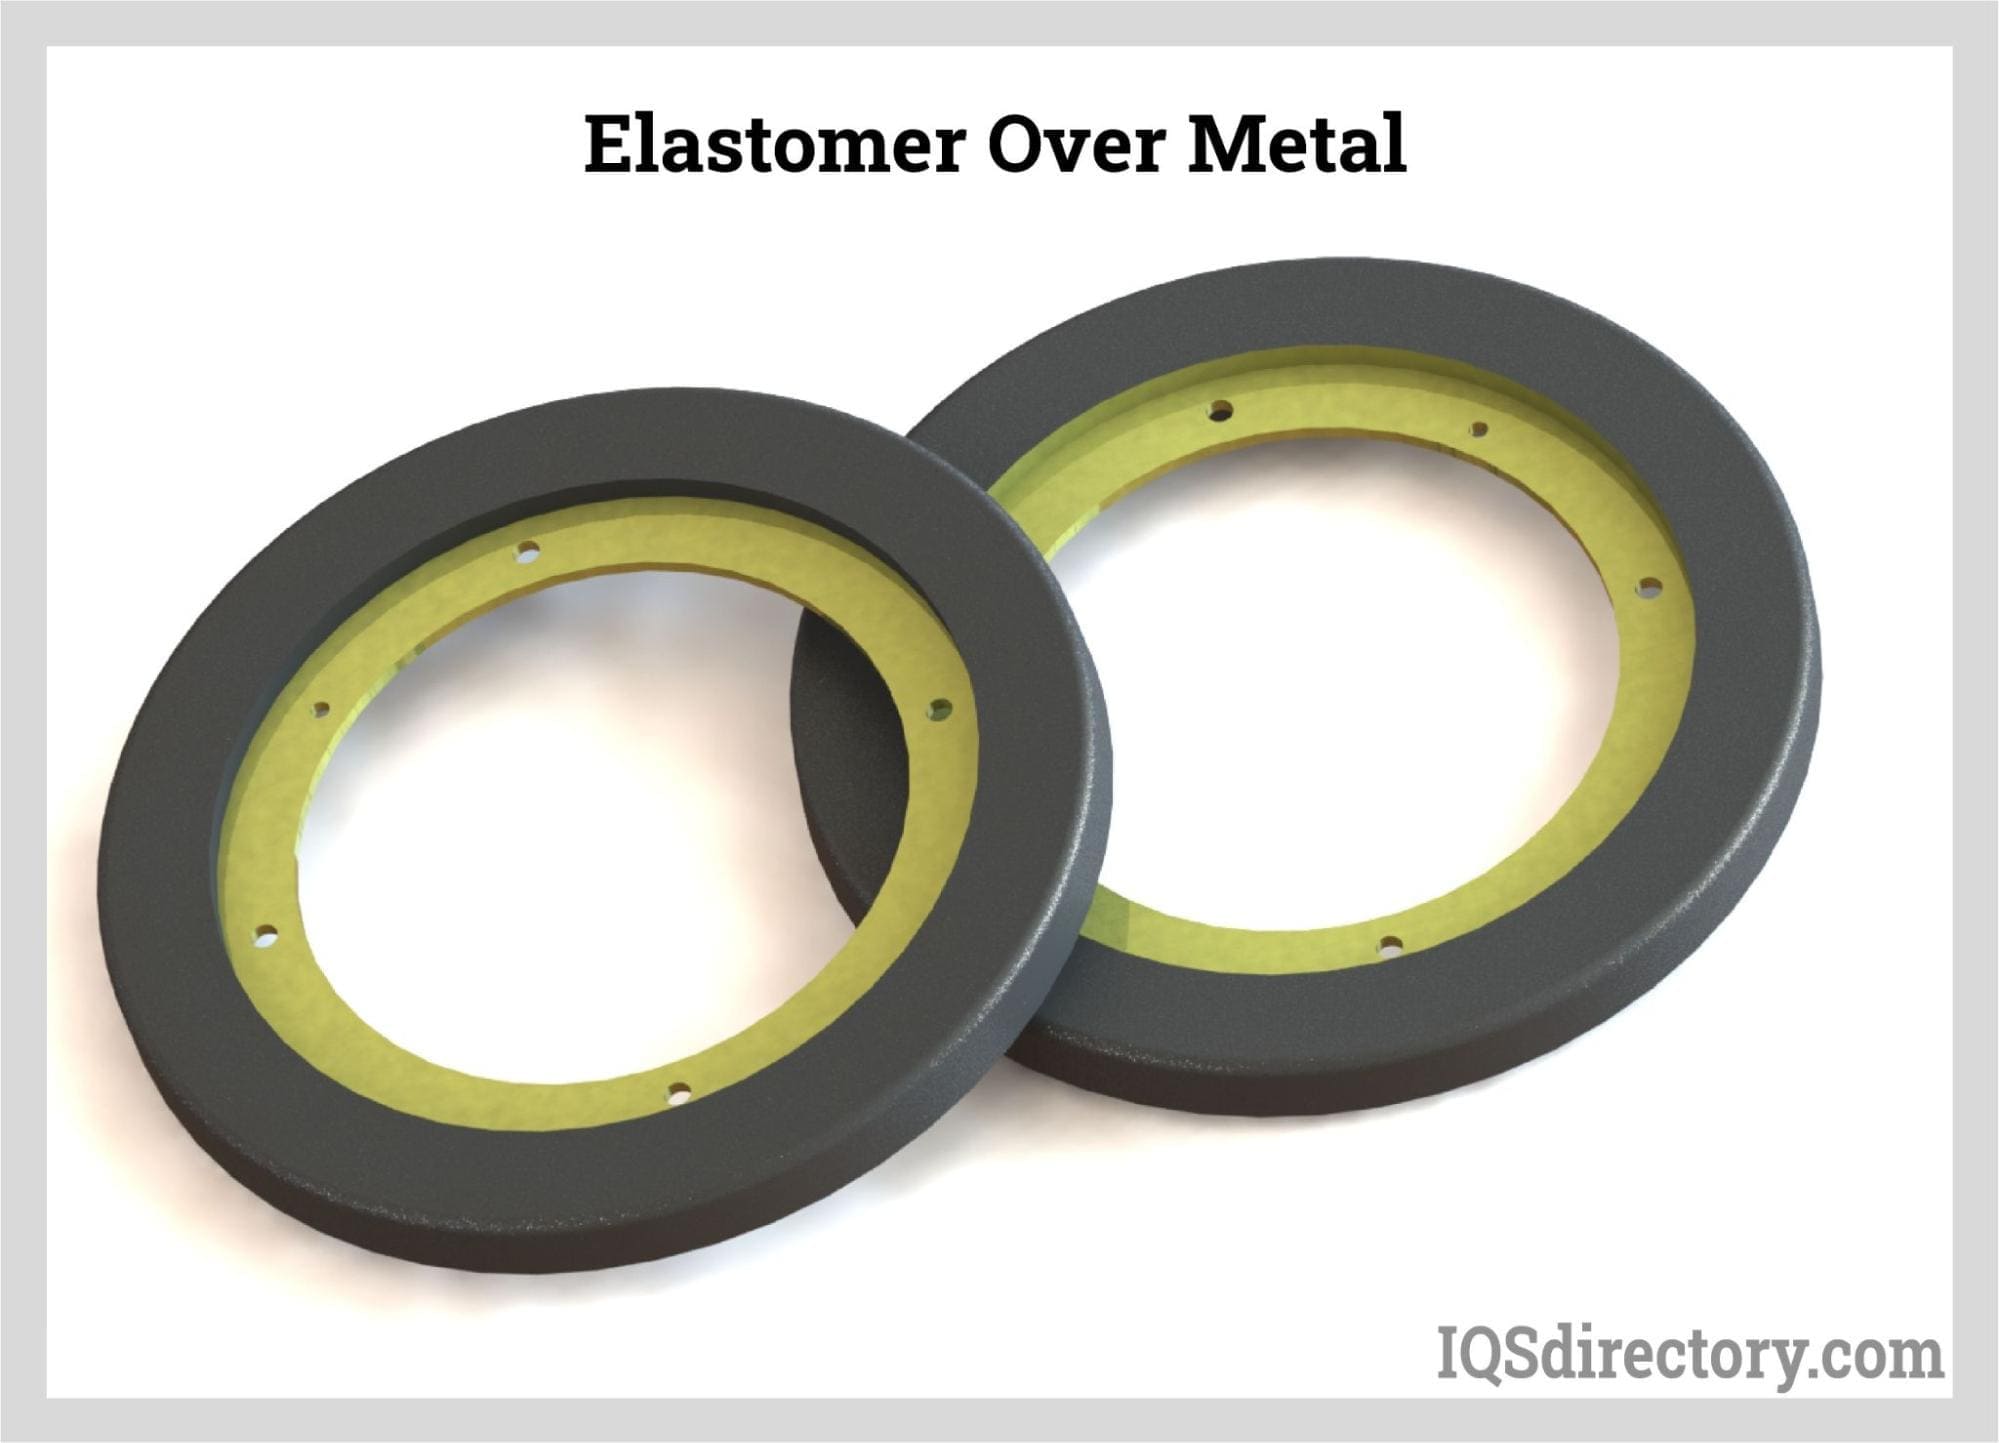 Elastomer Over Metal